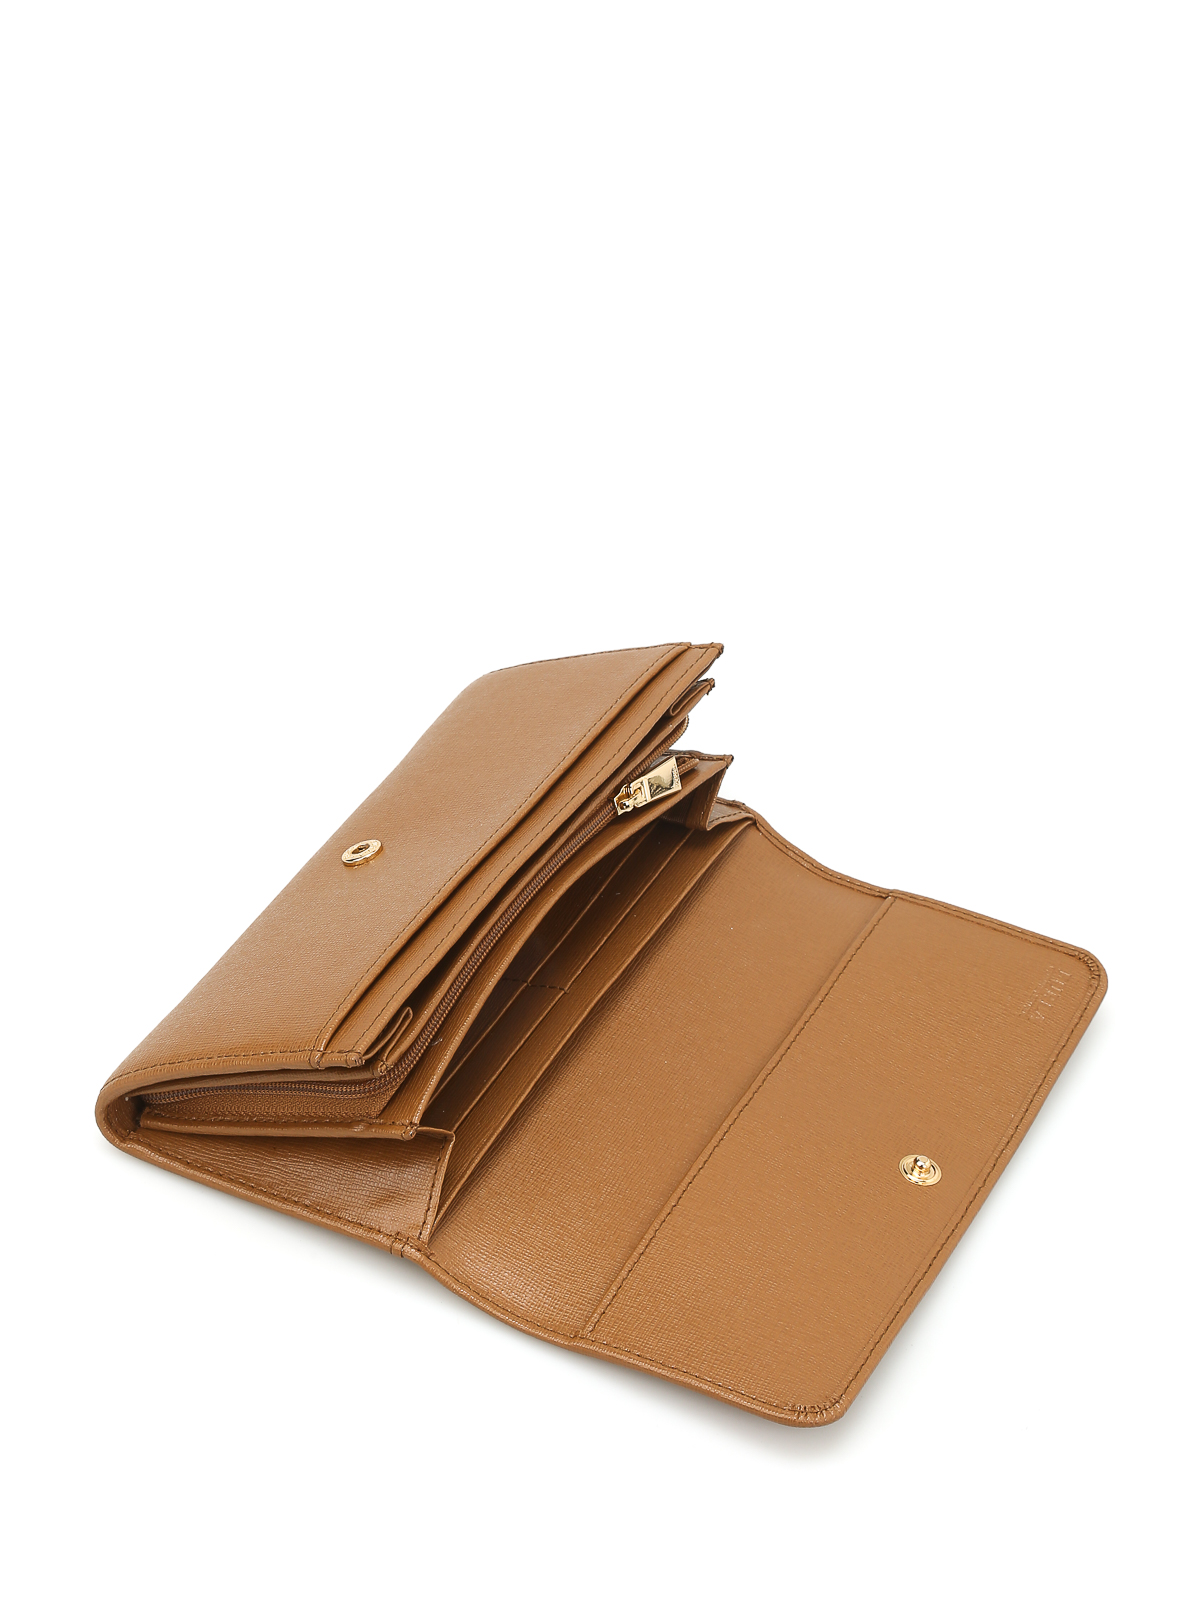 Wallets & purses Furla - Babylon bi-fold leather wallet - 850689